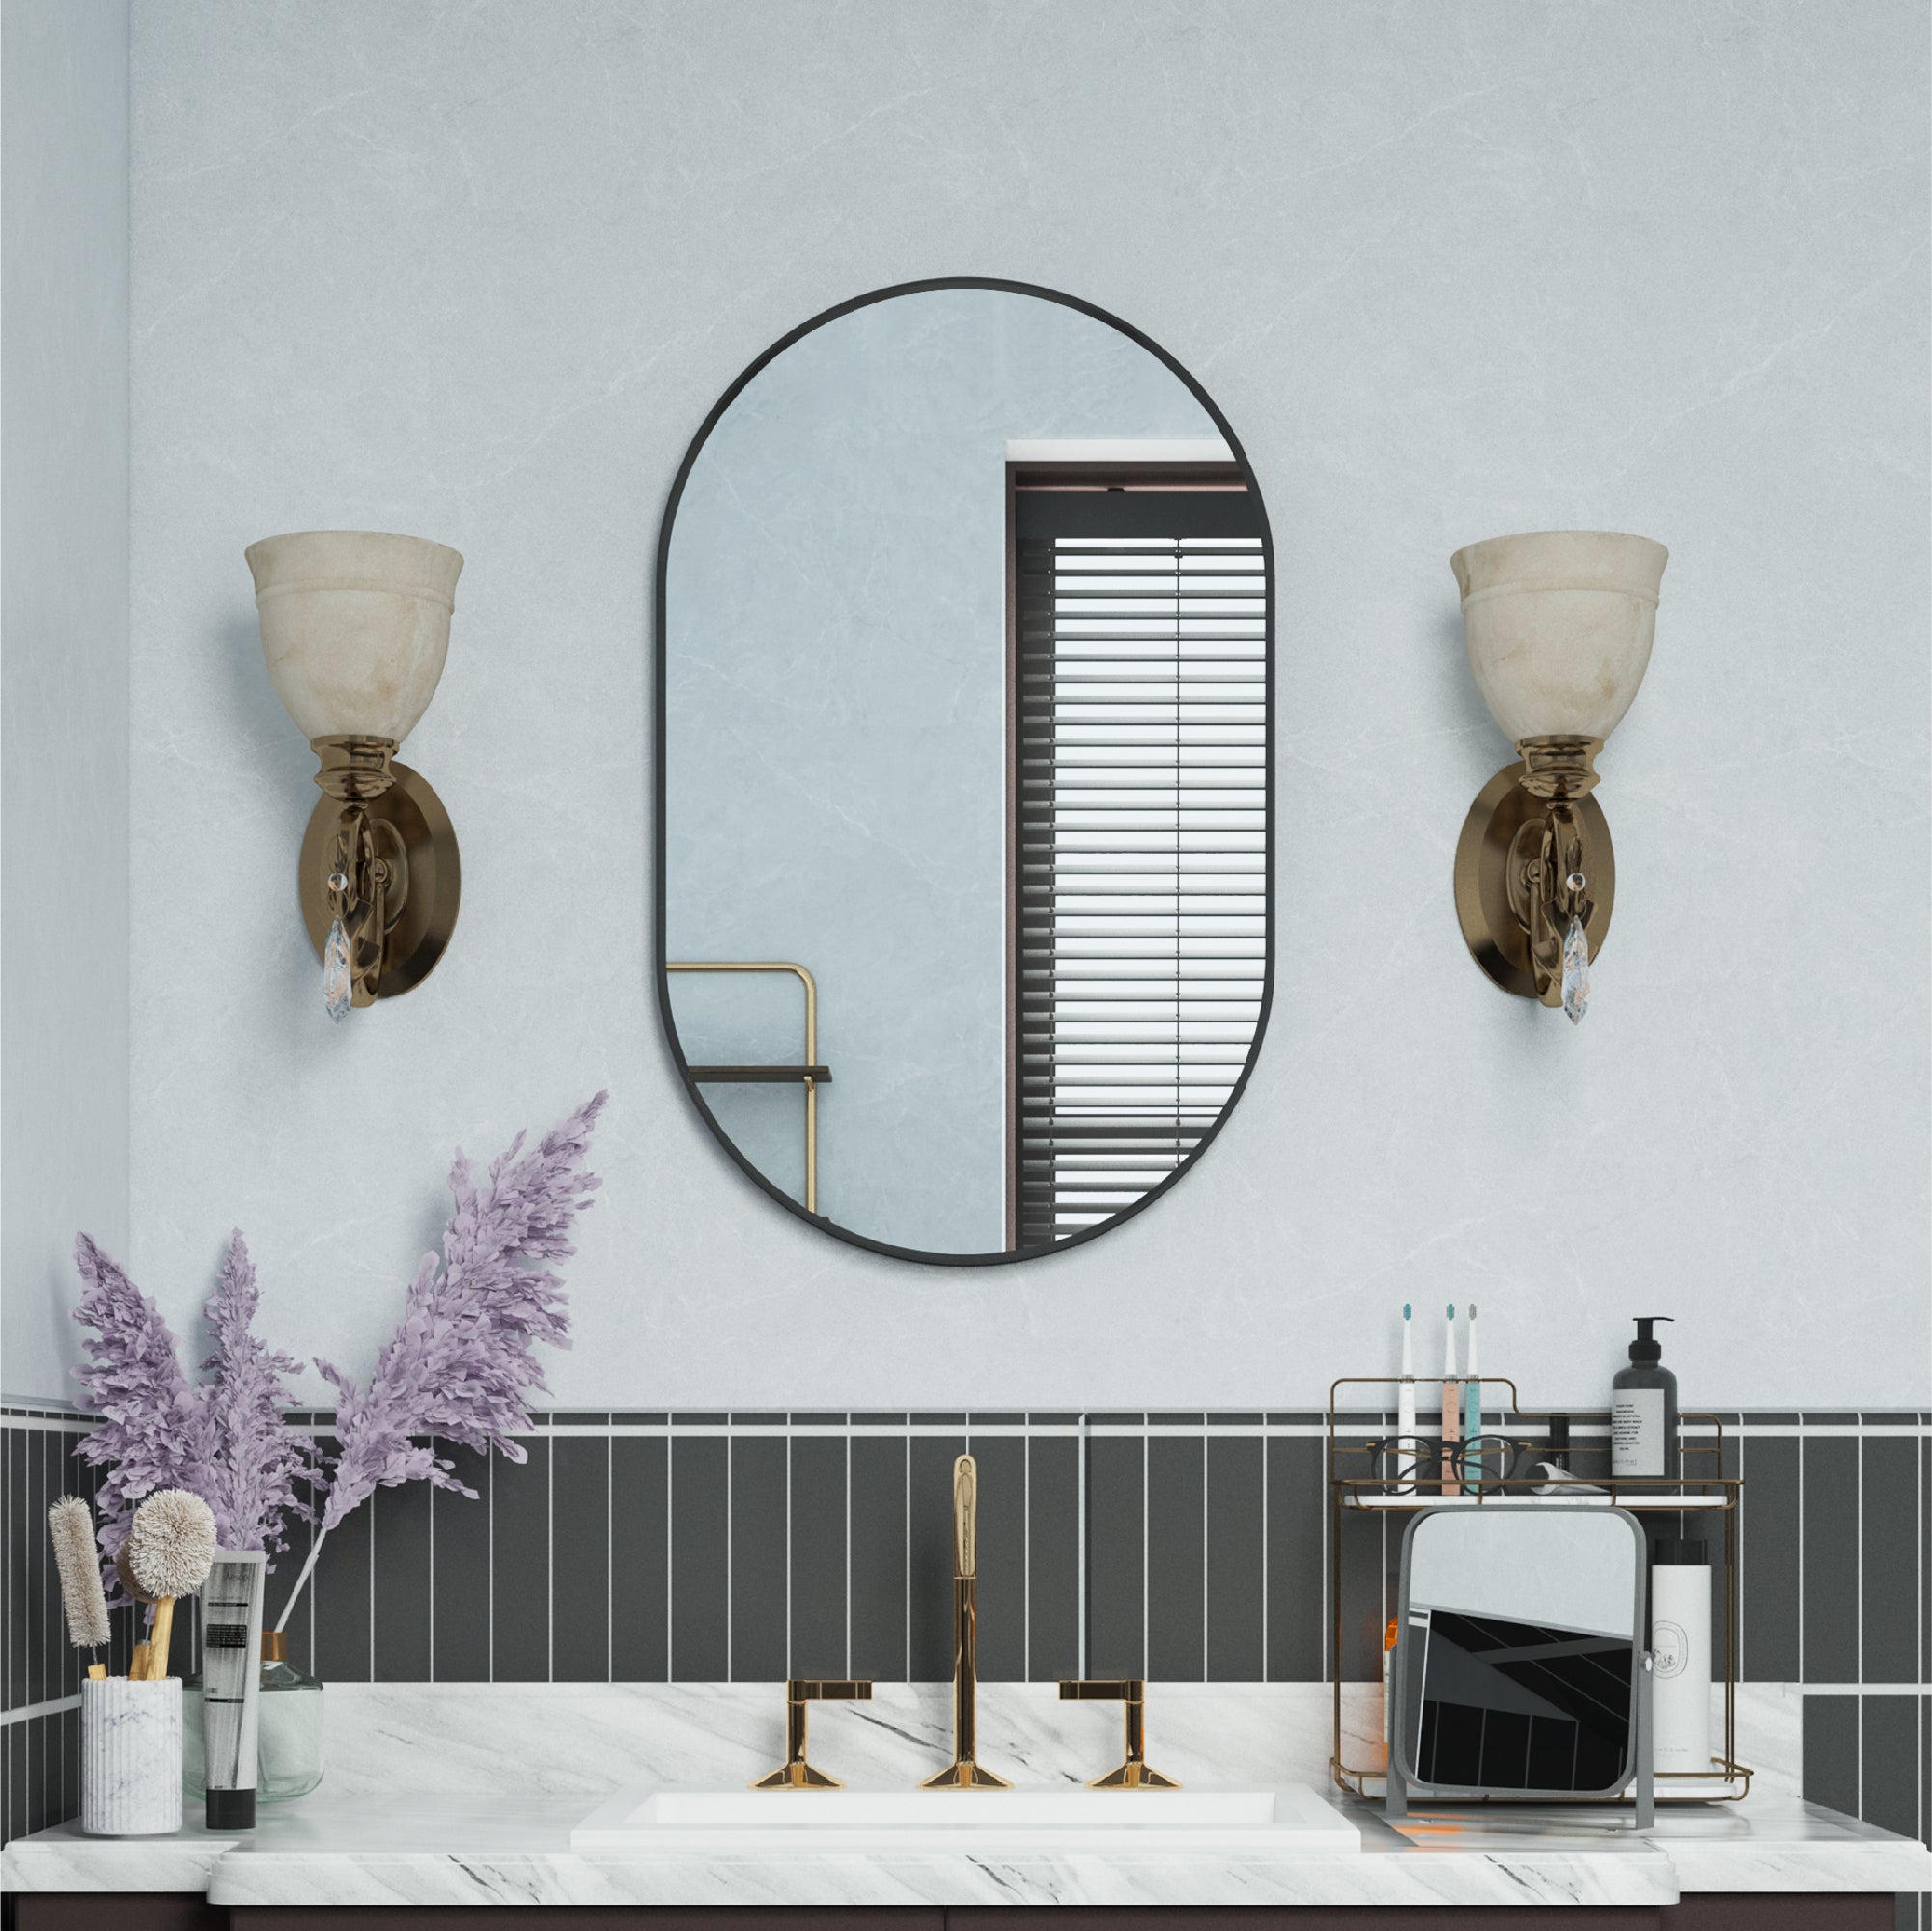 20 in. W x 32 in. H Oval Framed Wall Mount Bathroom Vanity Mirror in Matte Black